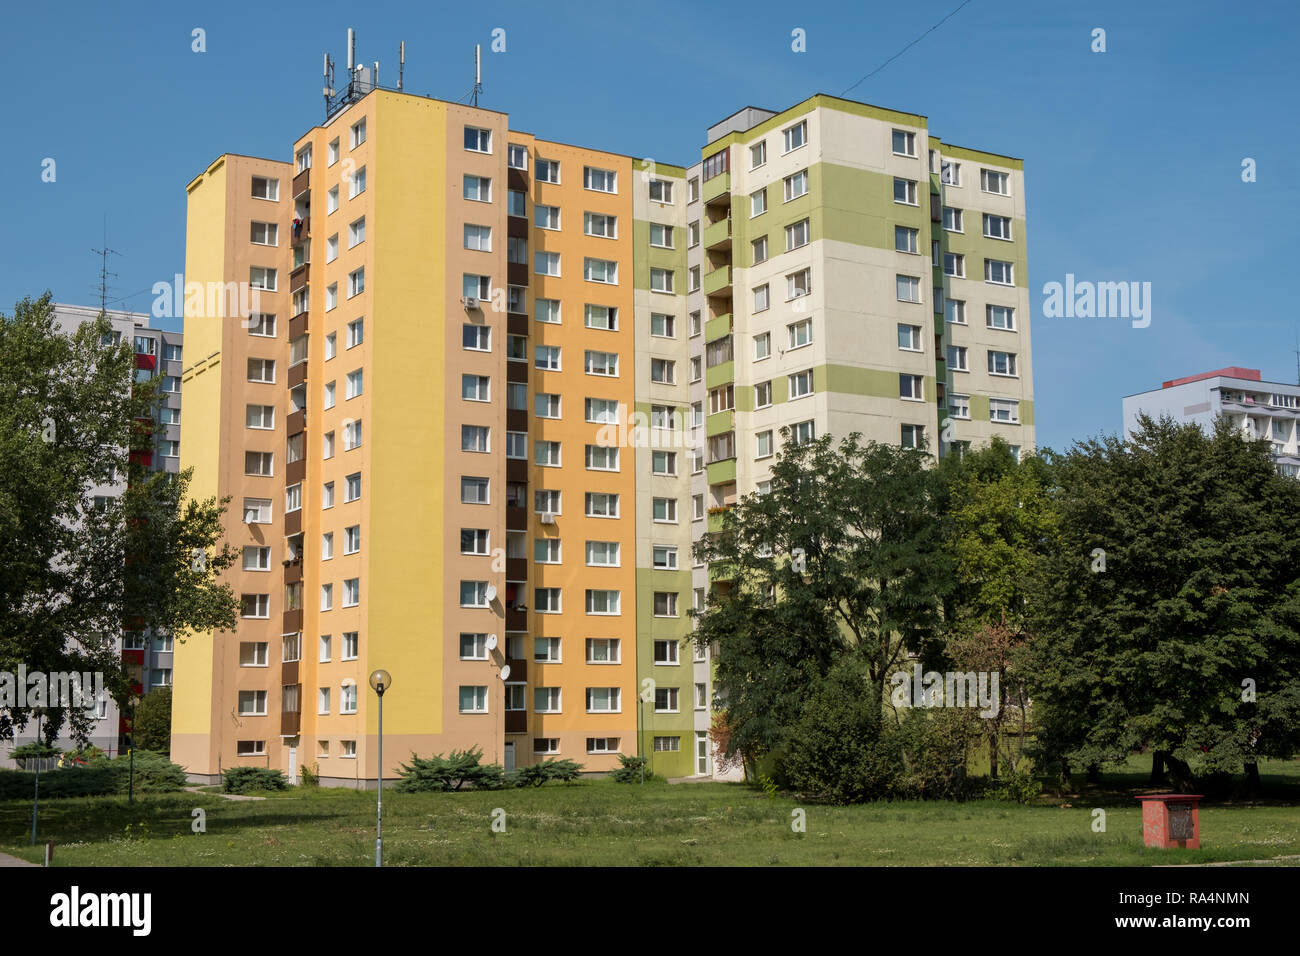 Petrzalka, Slowakei - Das Apartment Gebäude aus der sozialistischen Ära von Bratislava Vororten noch verwendet wird, und an diesem Tag gepflegt. Stockfoto